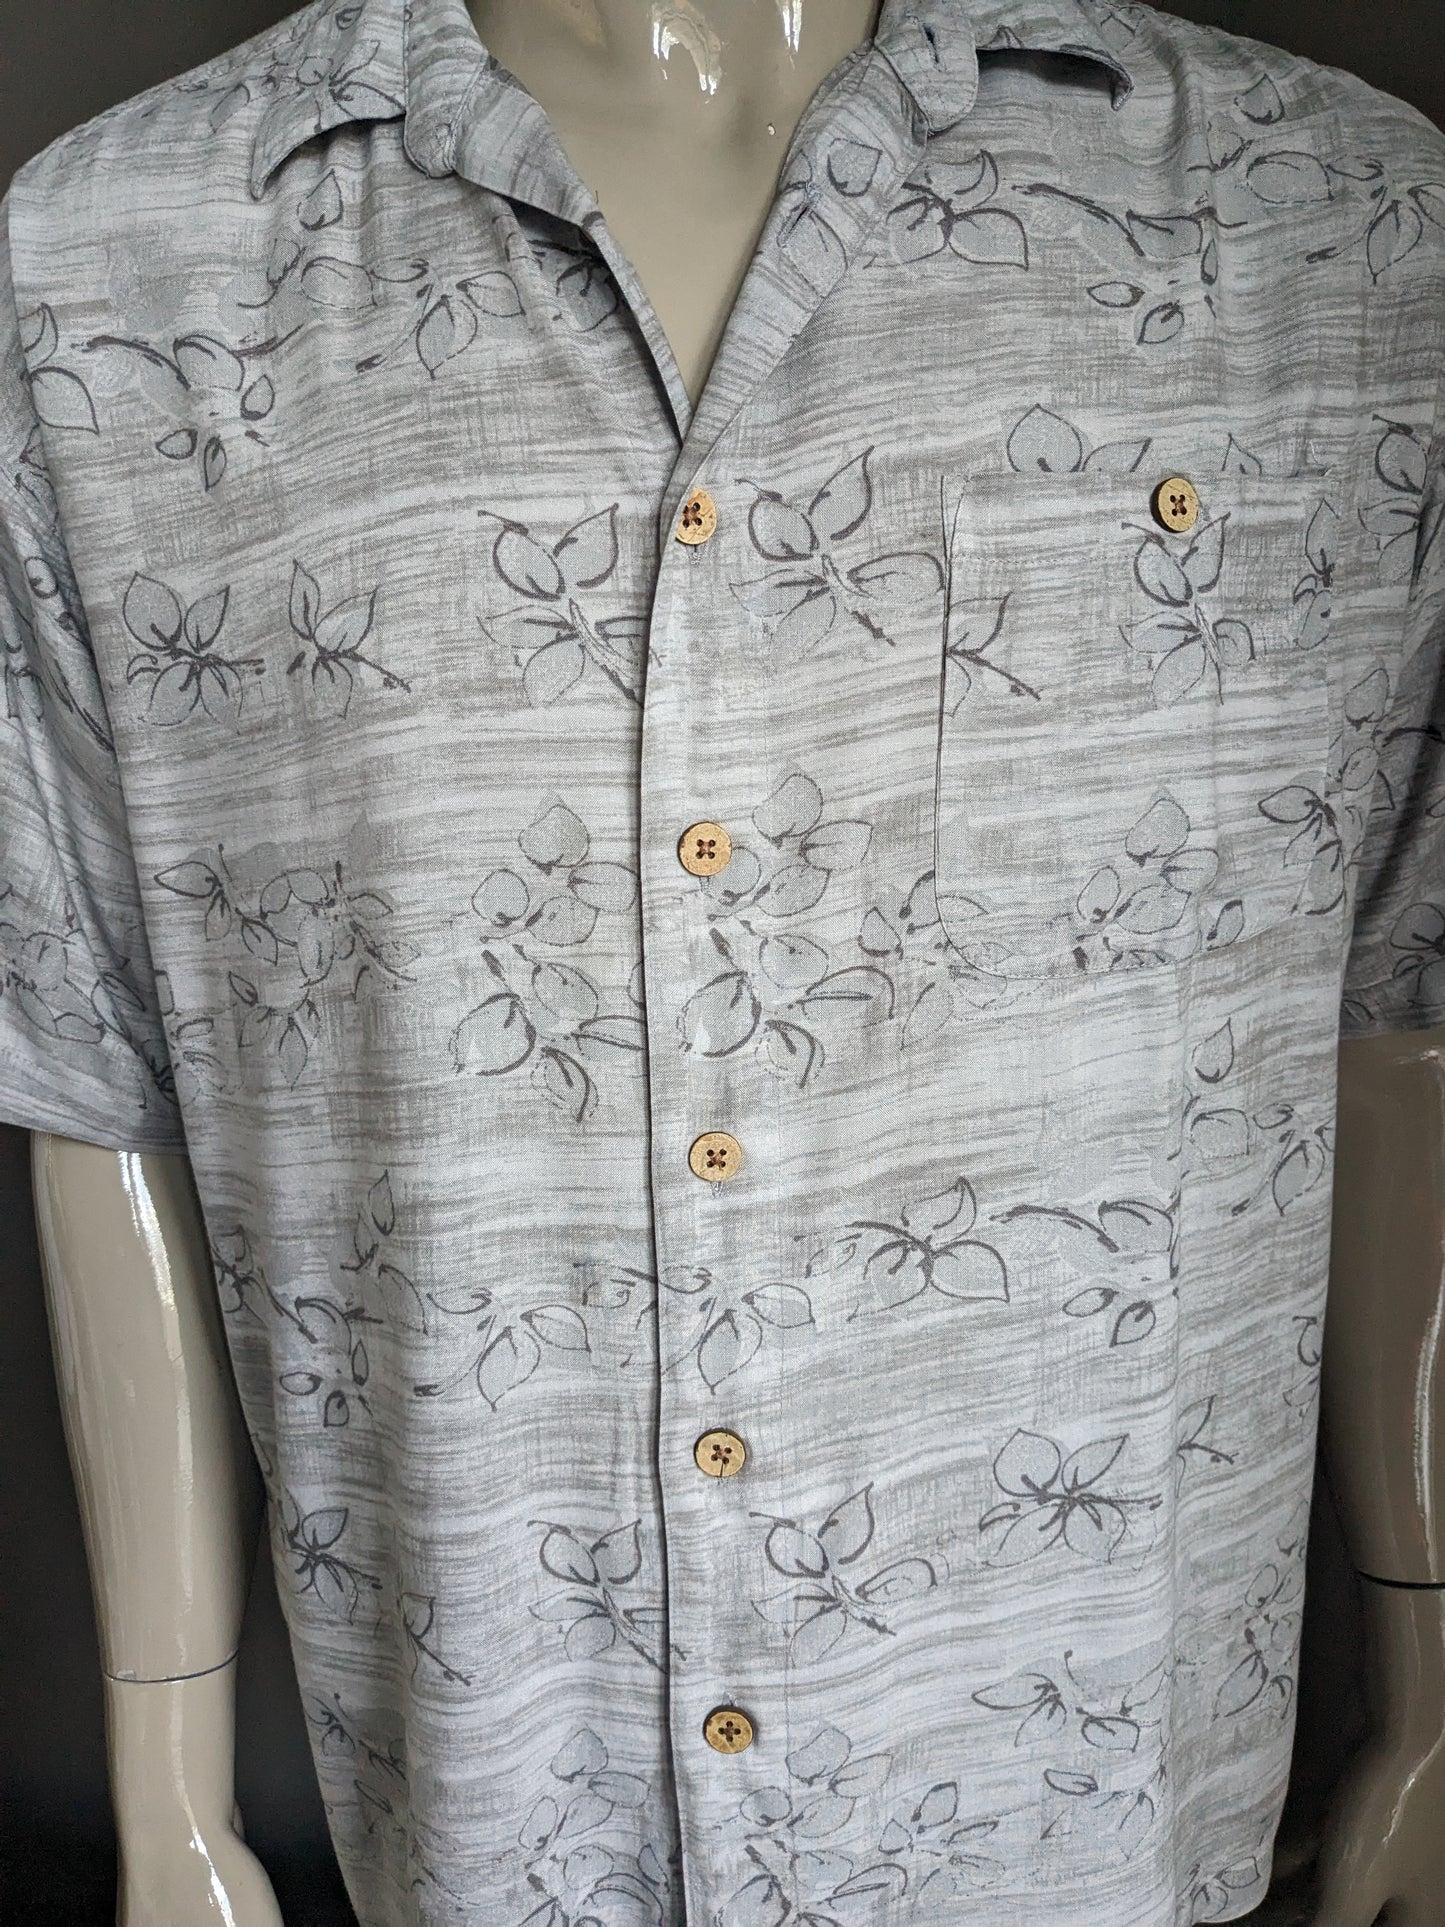 M.E. Sport Hawaii overhemd korte mouw. Grijs bruine print. Maat XL. Viscose / Rayon